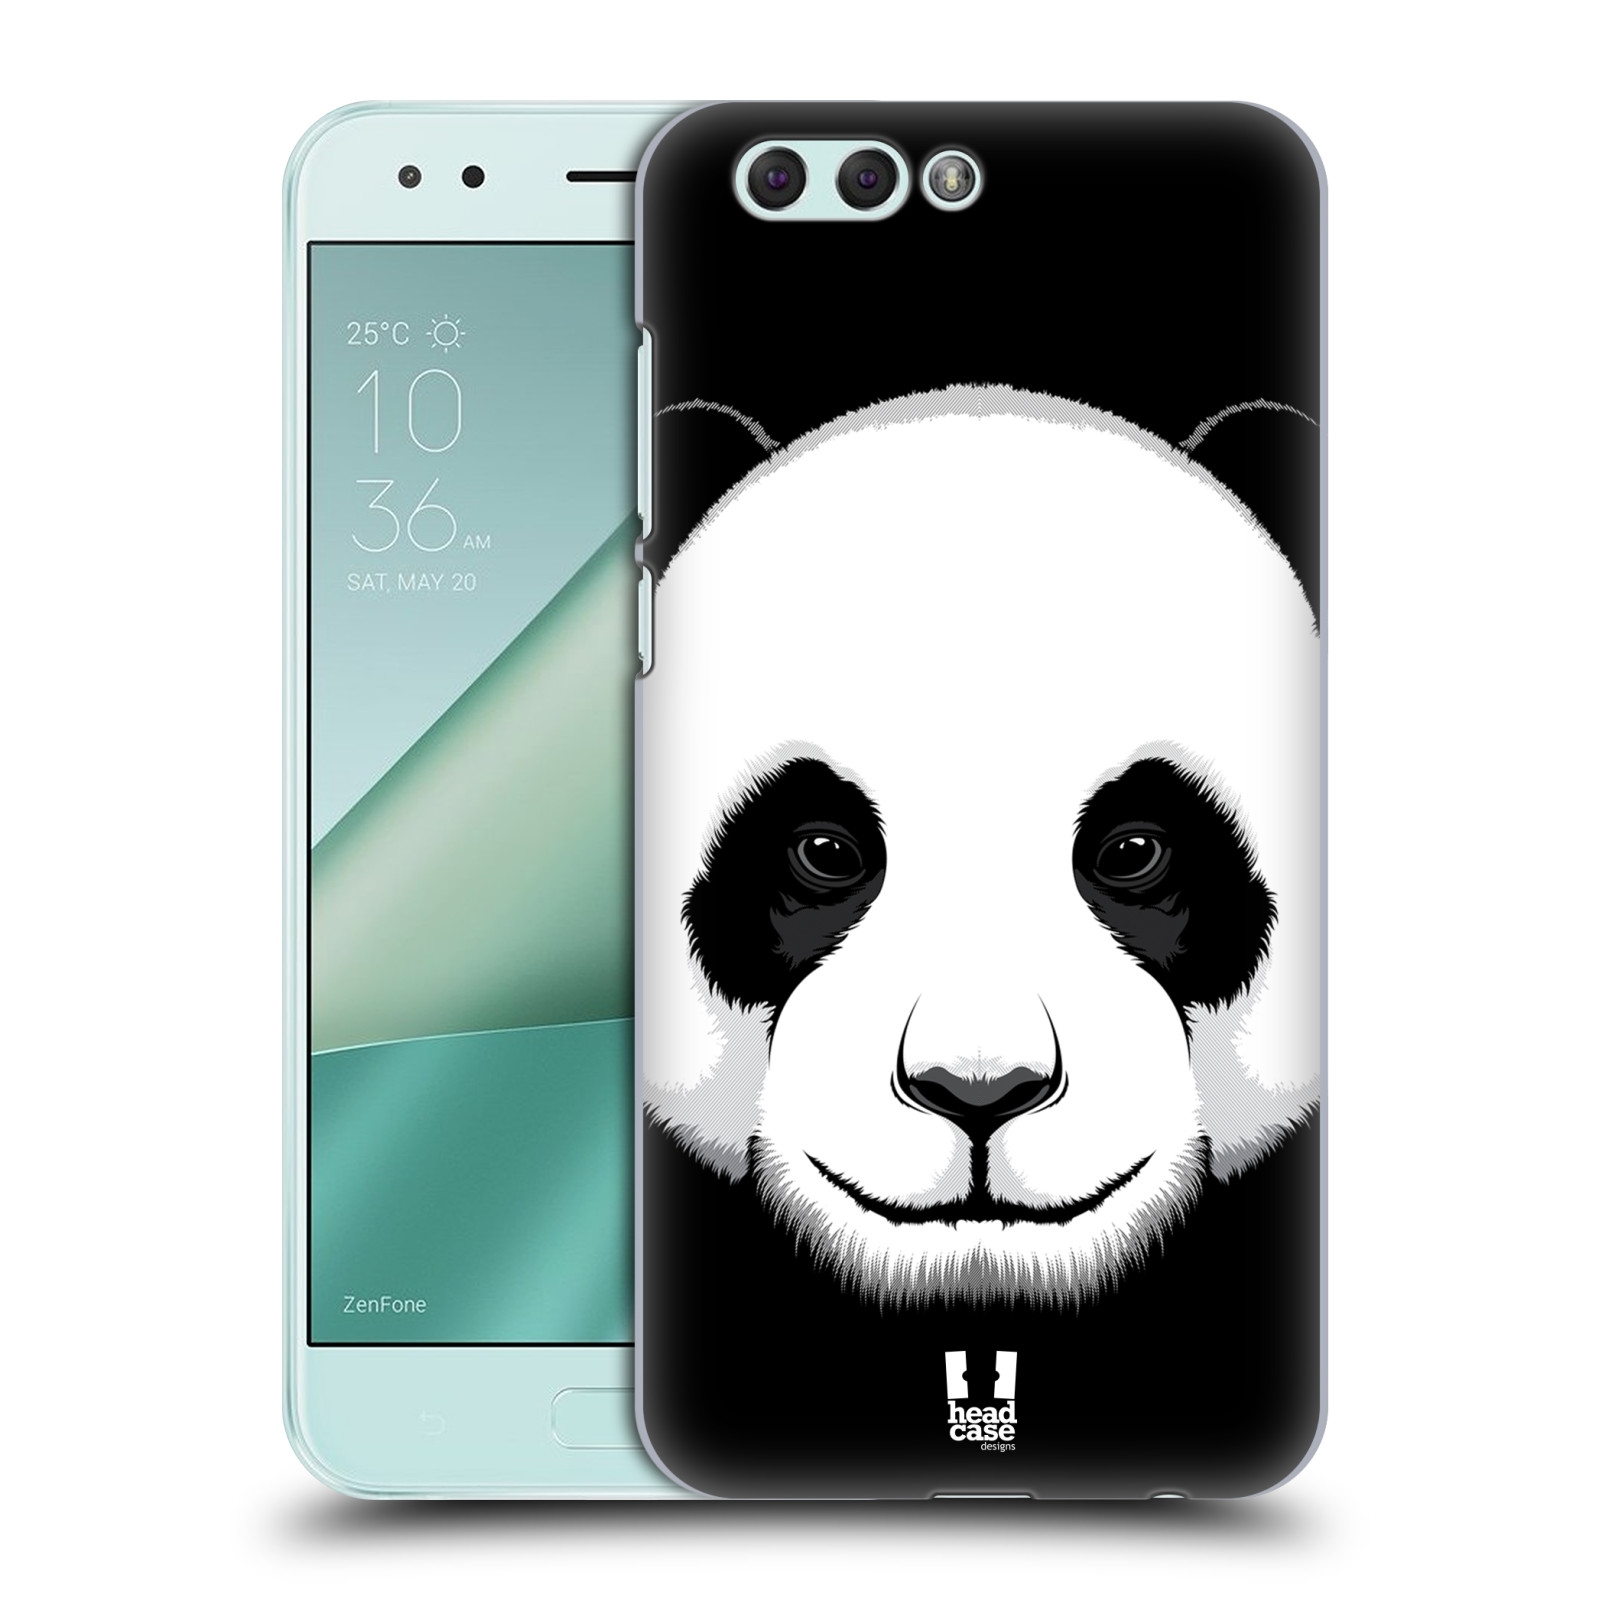 HEAD CASE plastový obal na mobil Asus Zenfone 4 ZE554KL vzor Zvíře kreslená tvář panda